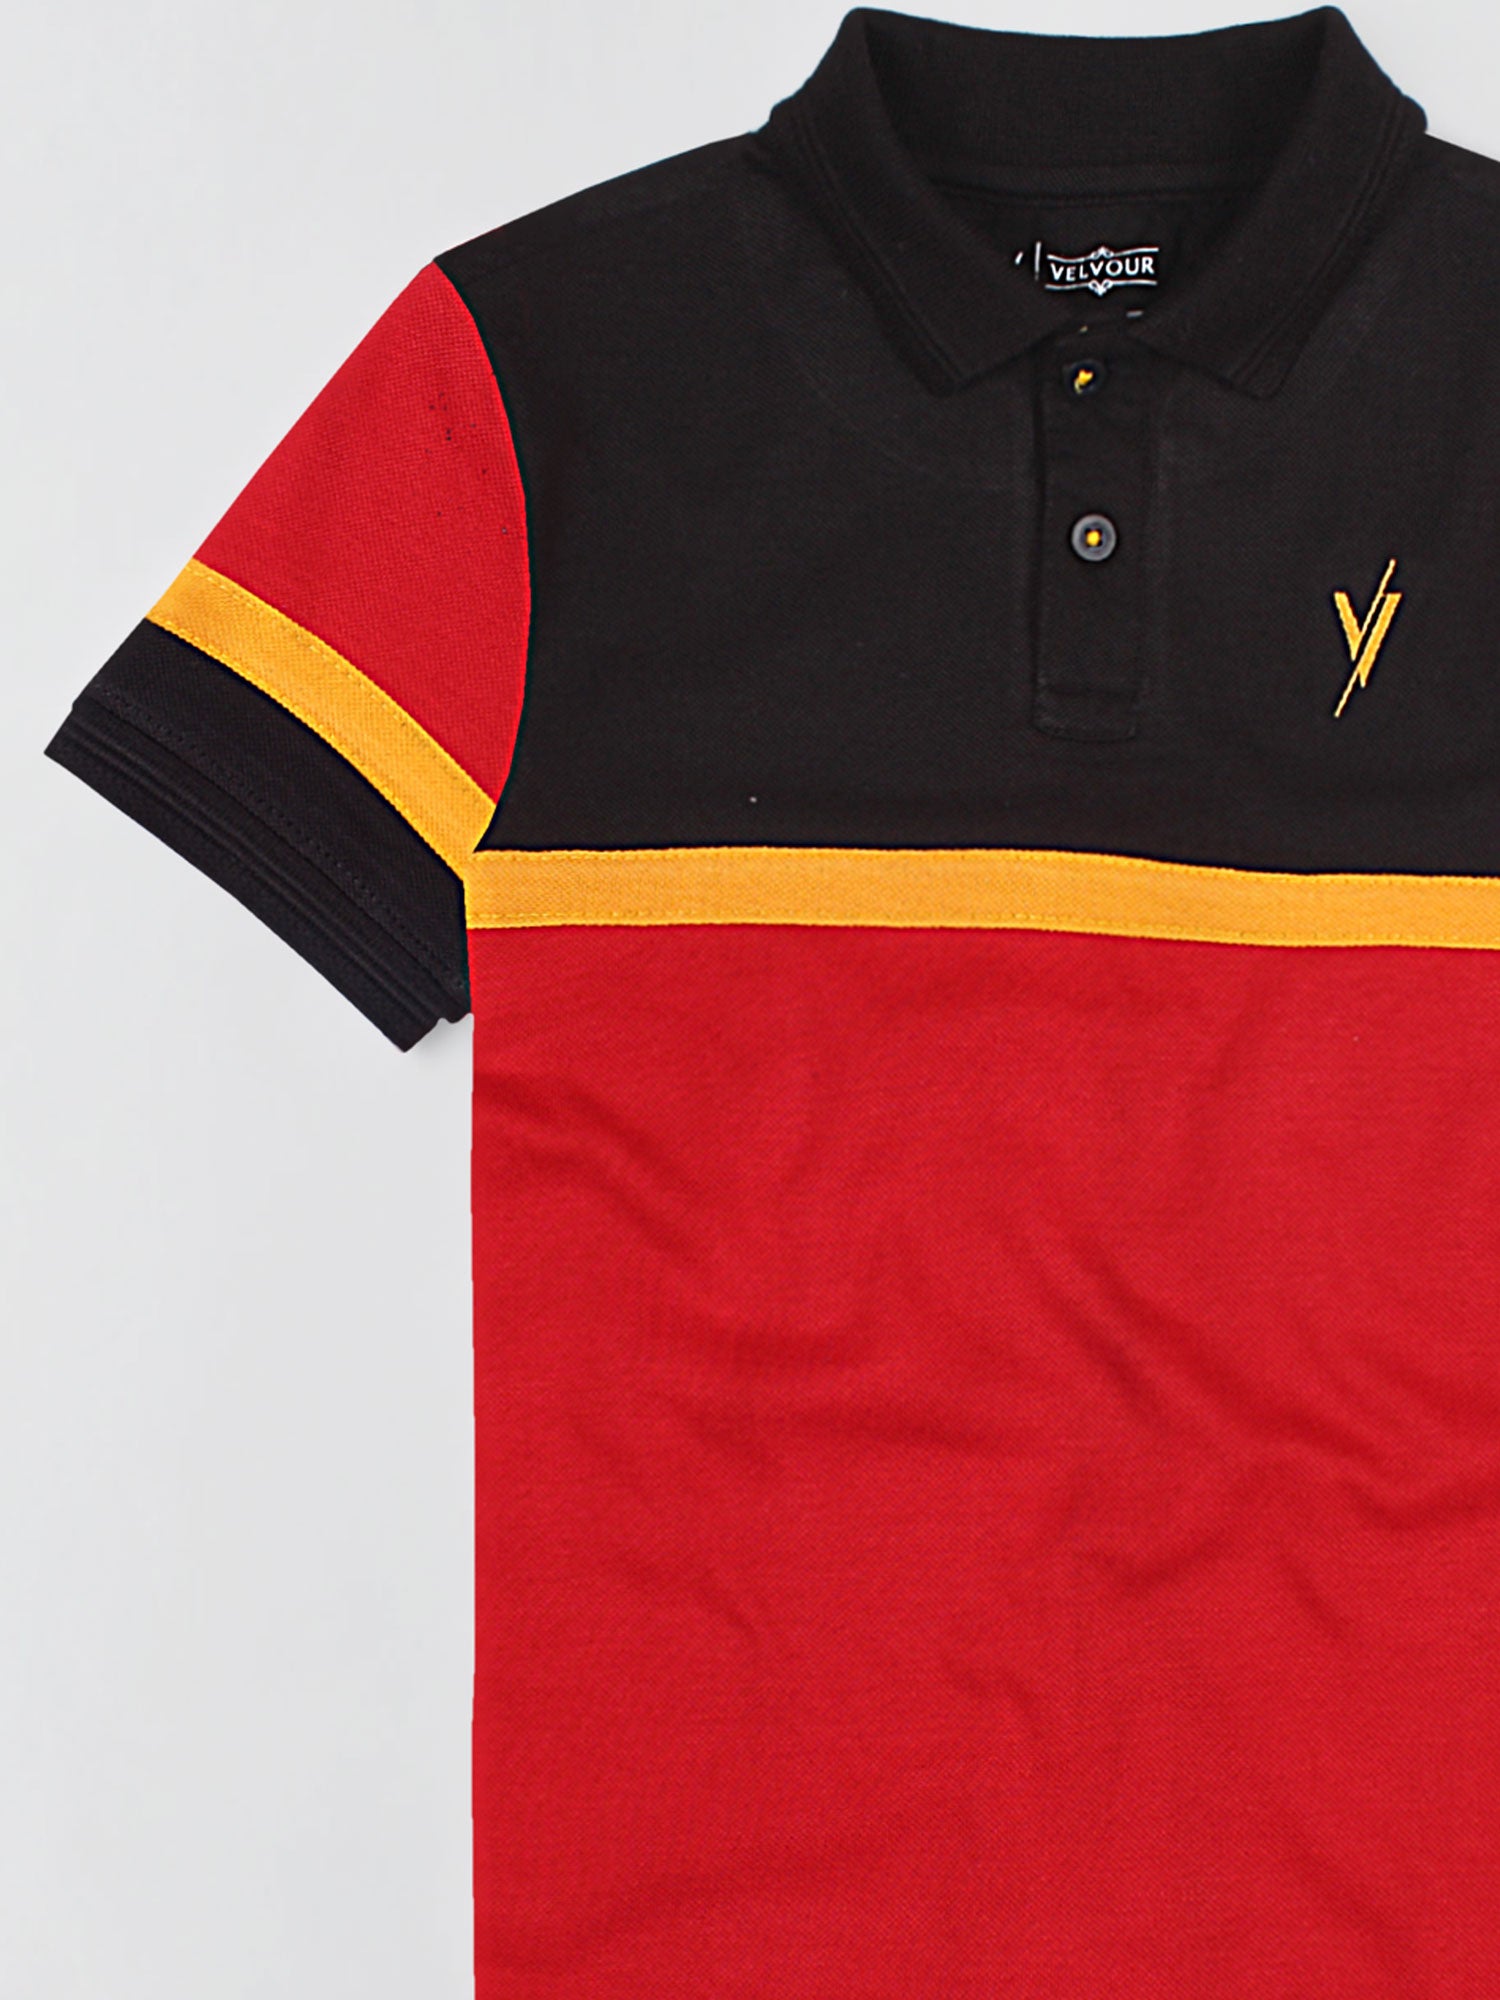 Boys Polo Shirt (Short Sleeve) By Velvour Art# VBP04-D - Velvour Shop